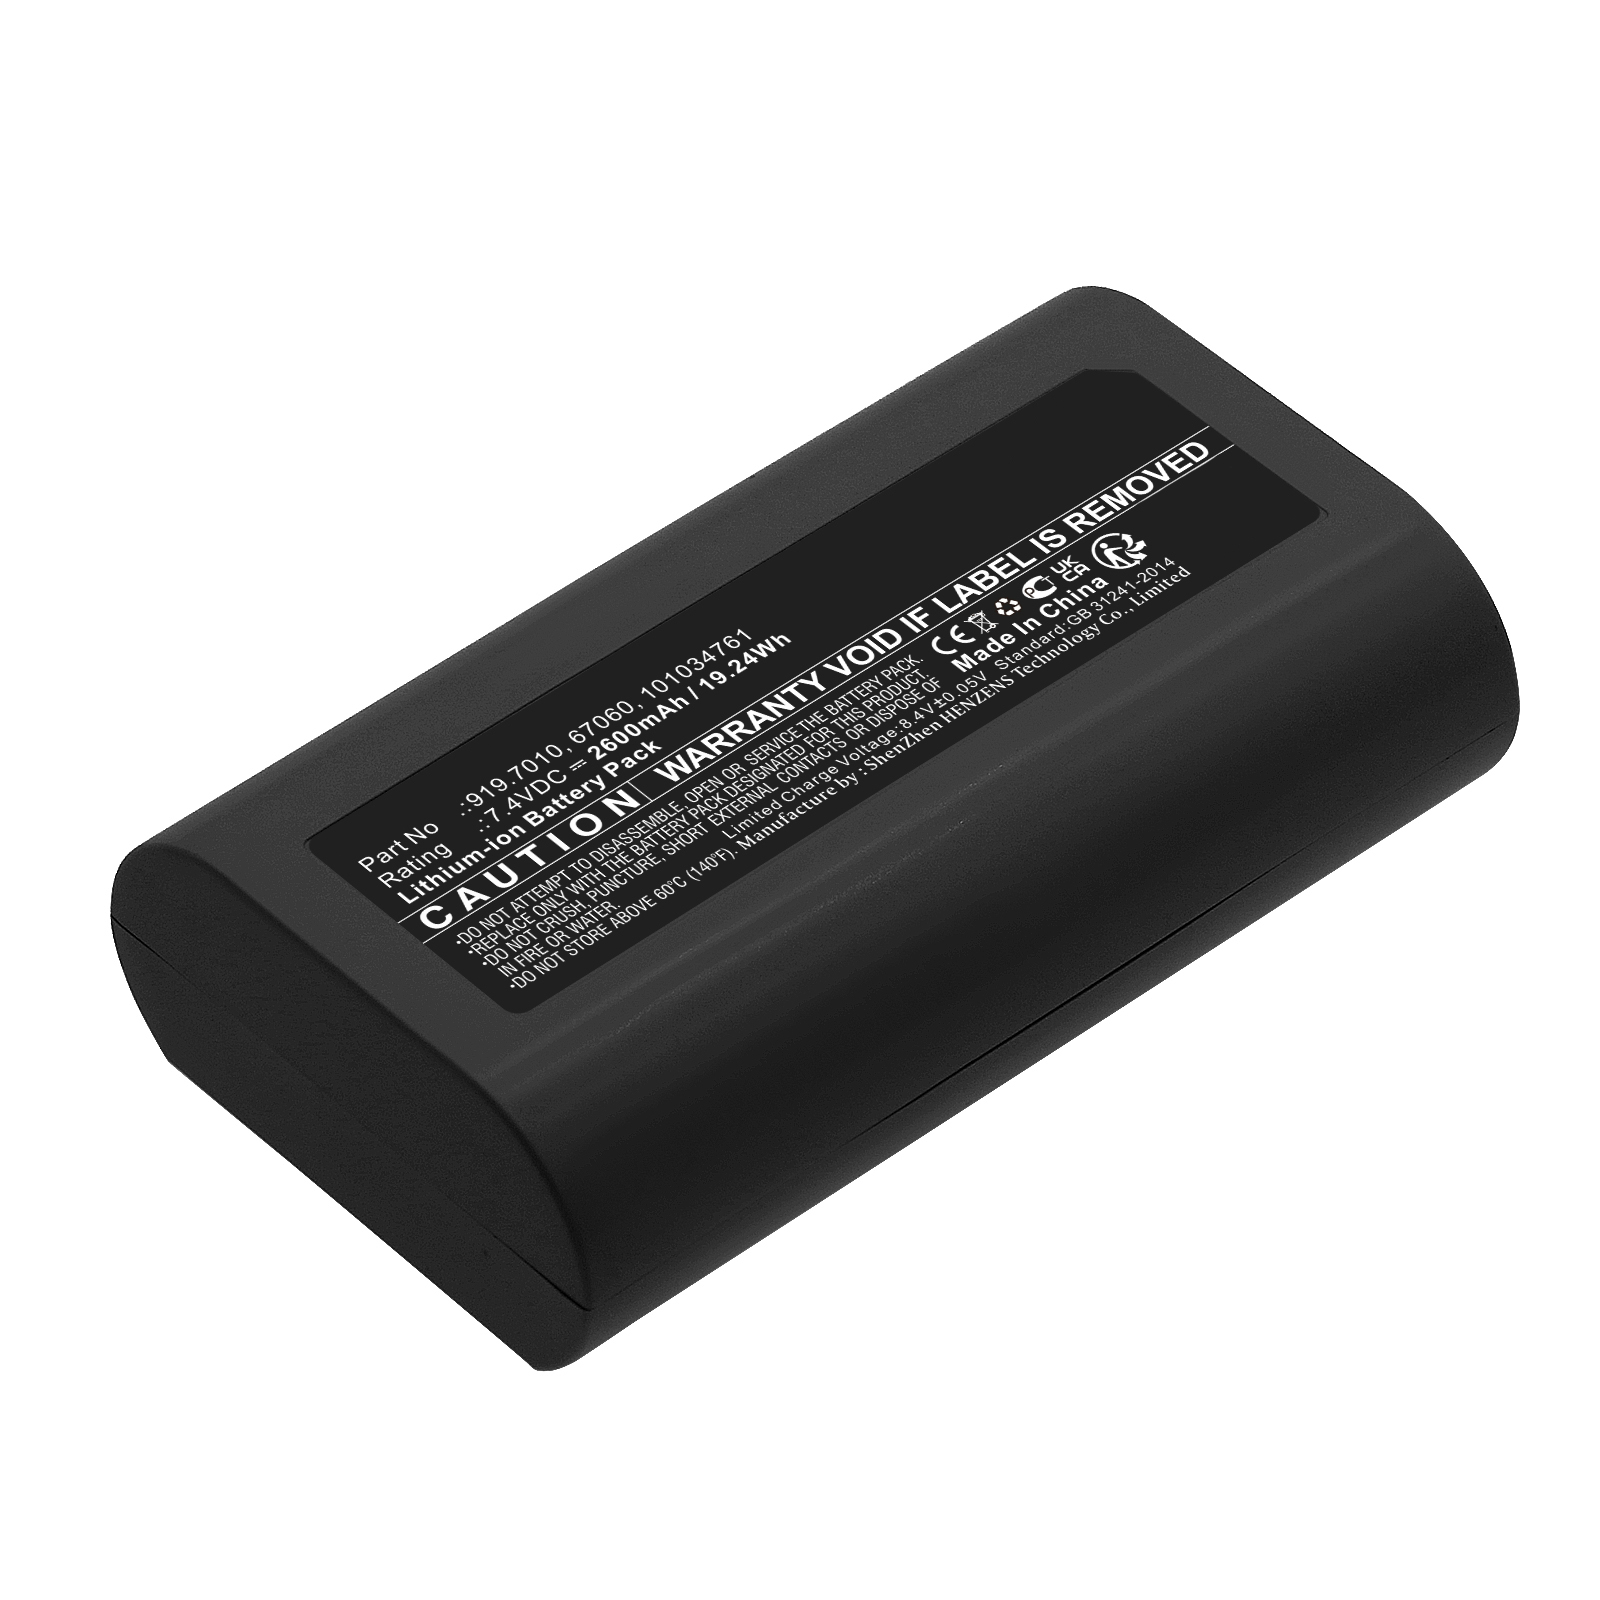 Synergy Digital Medical Battery, Compatible with Medela 67060 Medical Battery (Li-ion, 7.4V, 2600mAh)